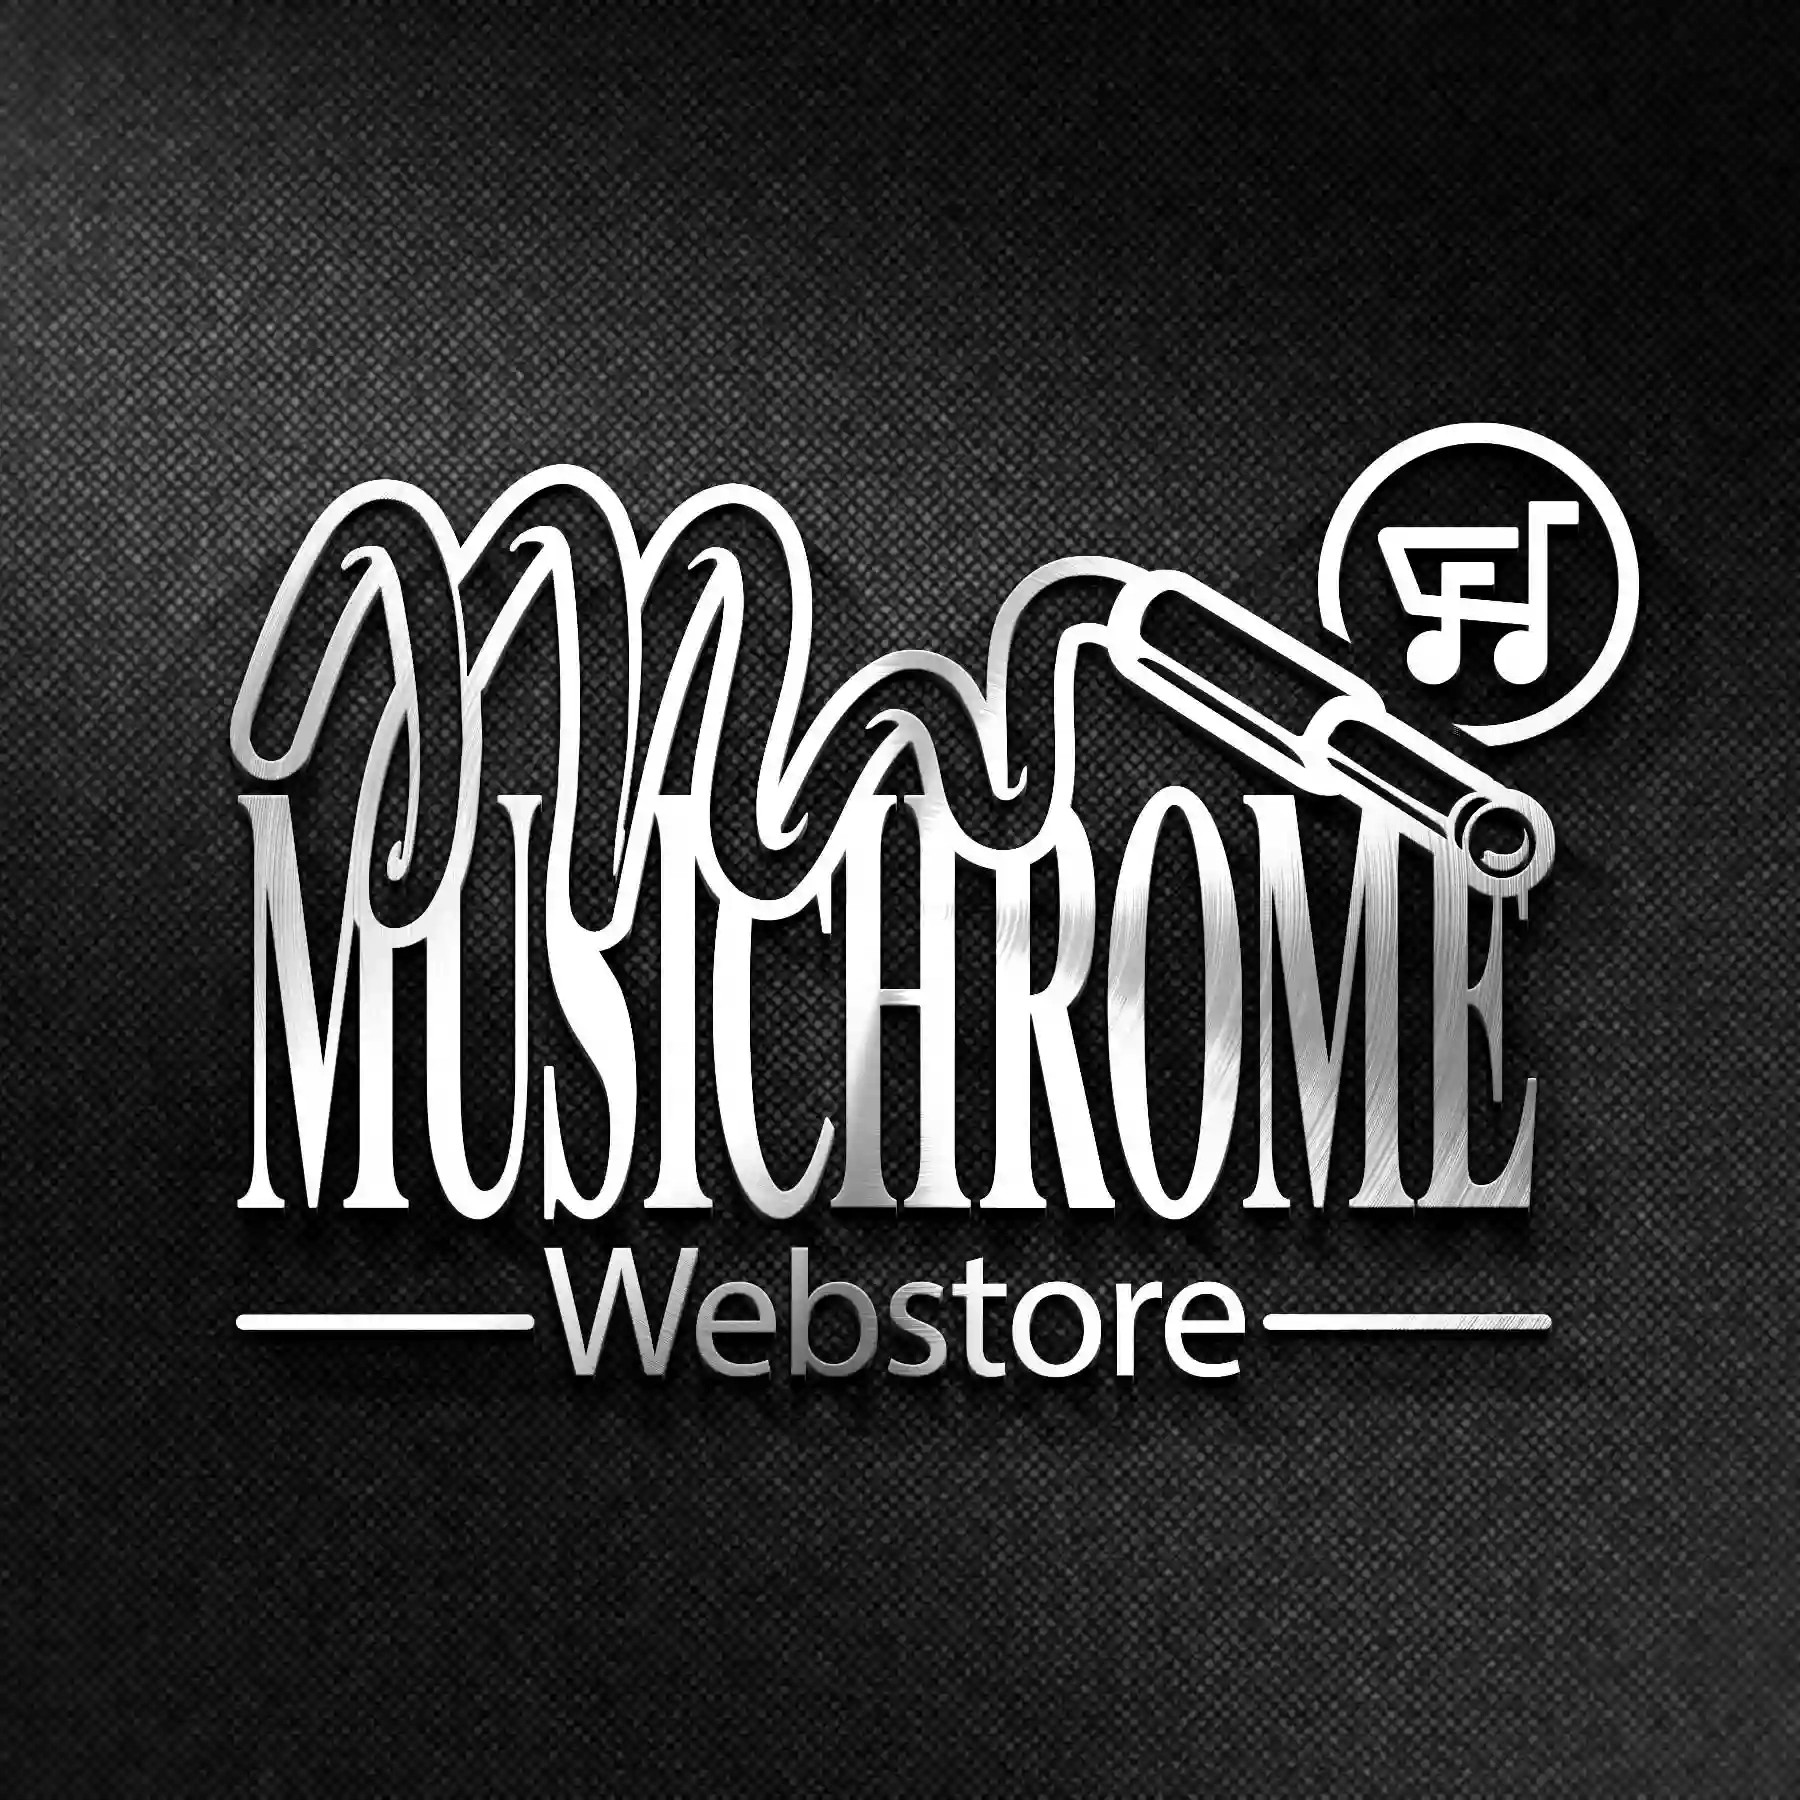 Musichrome Webstore Srl